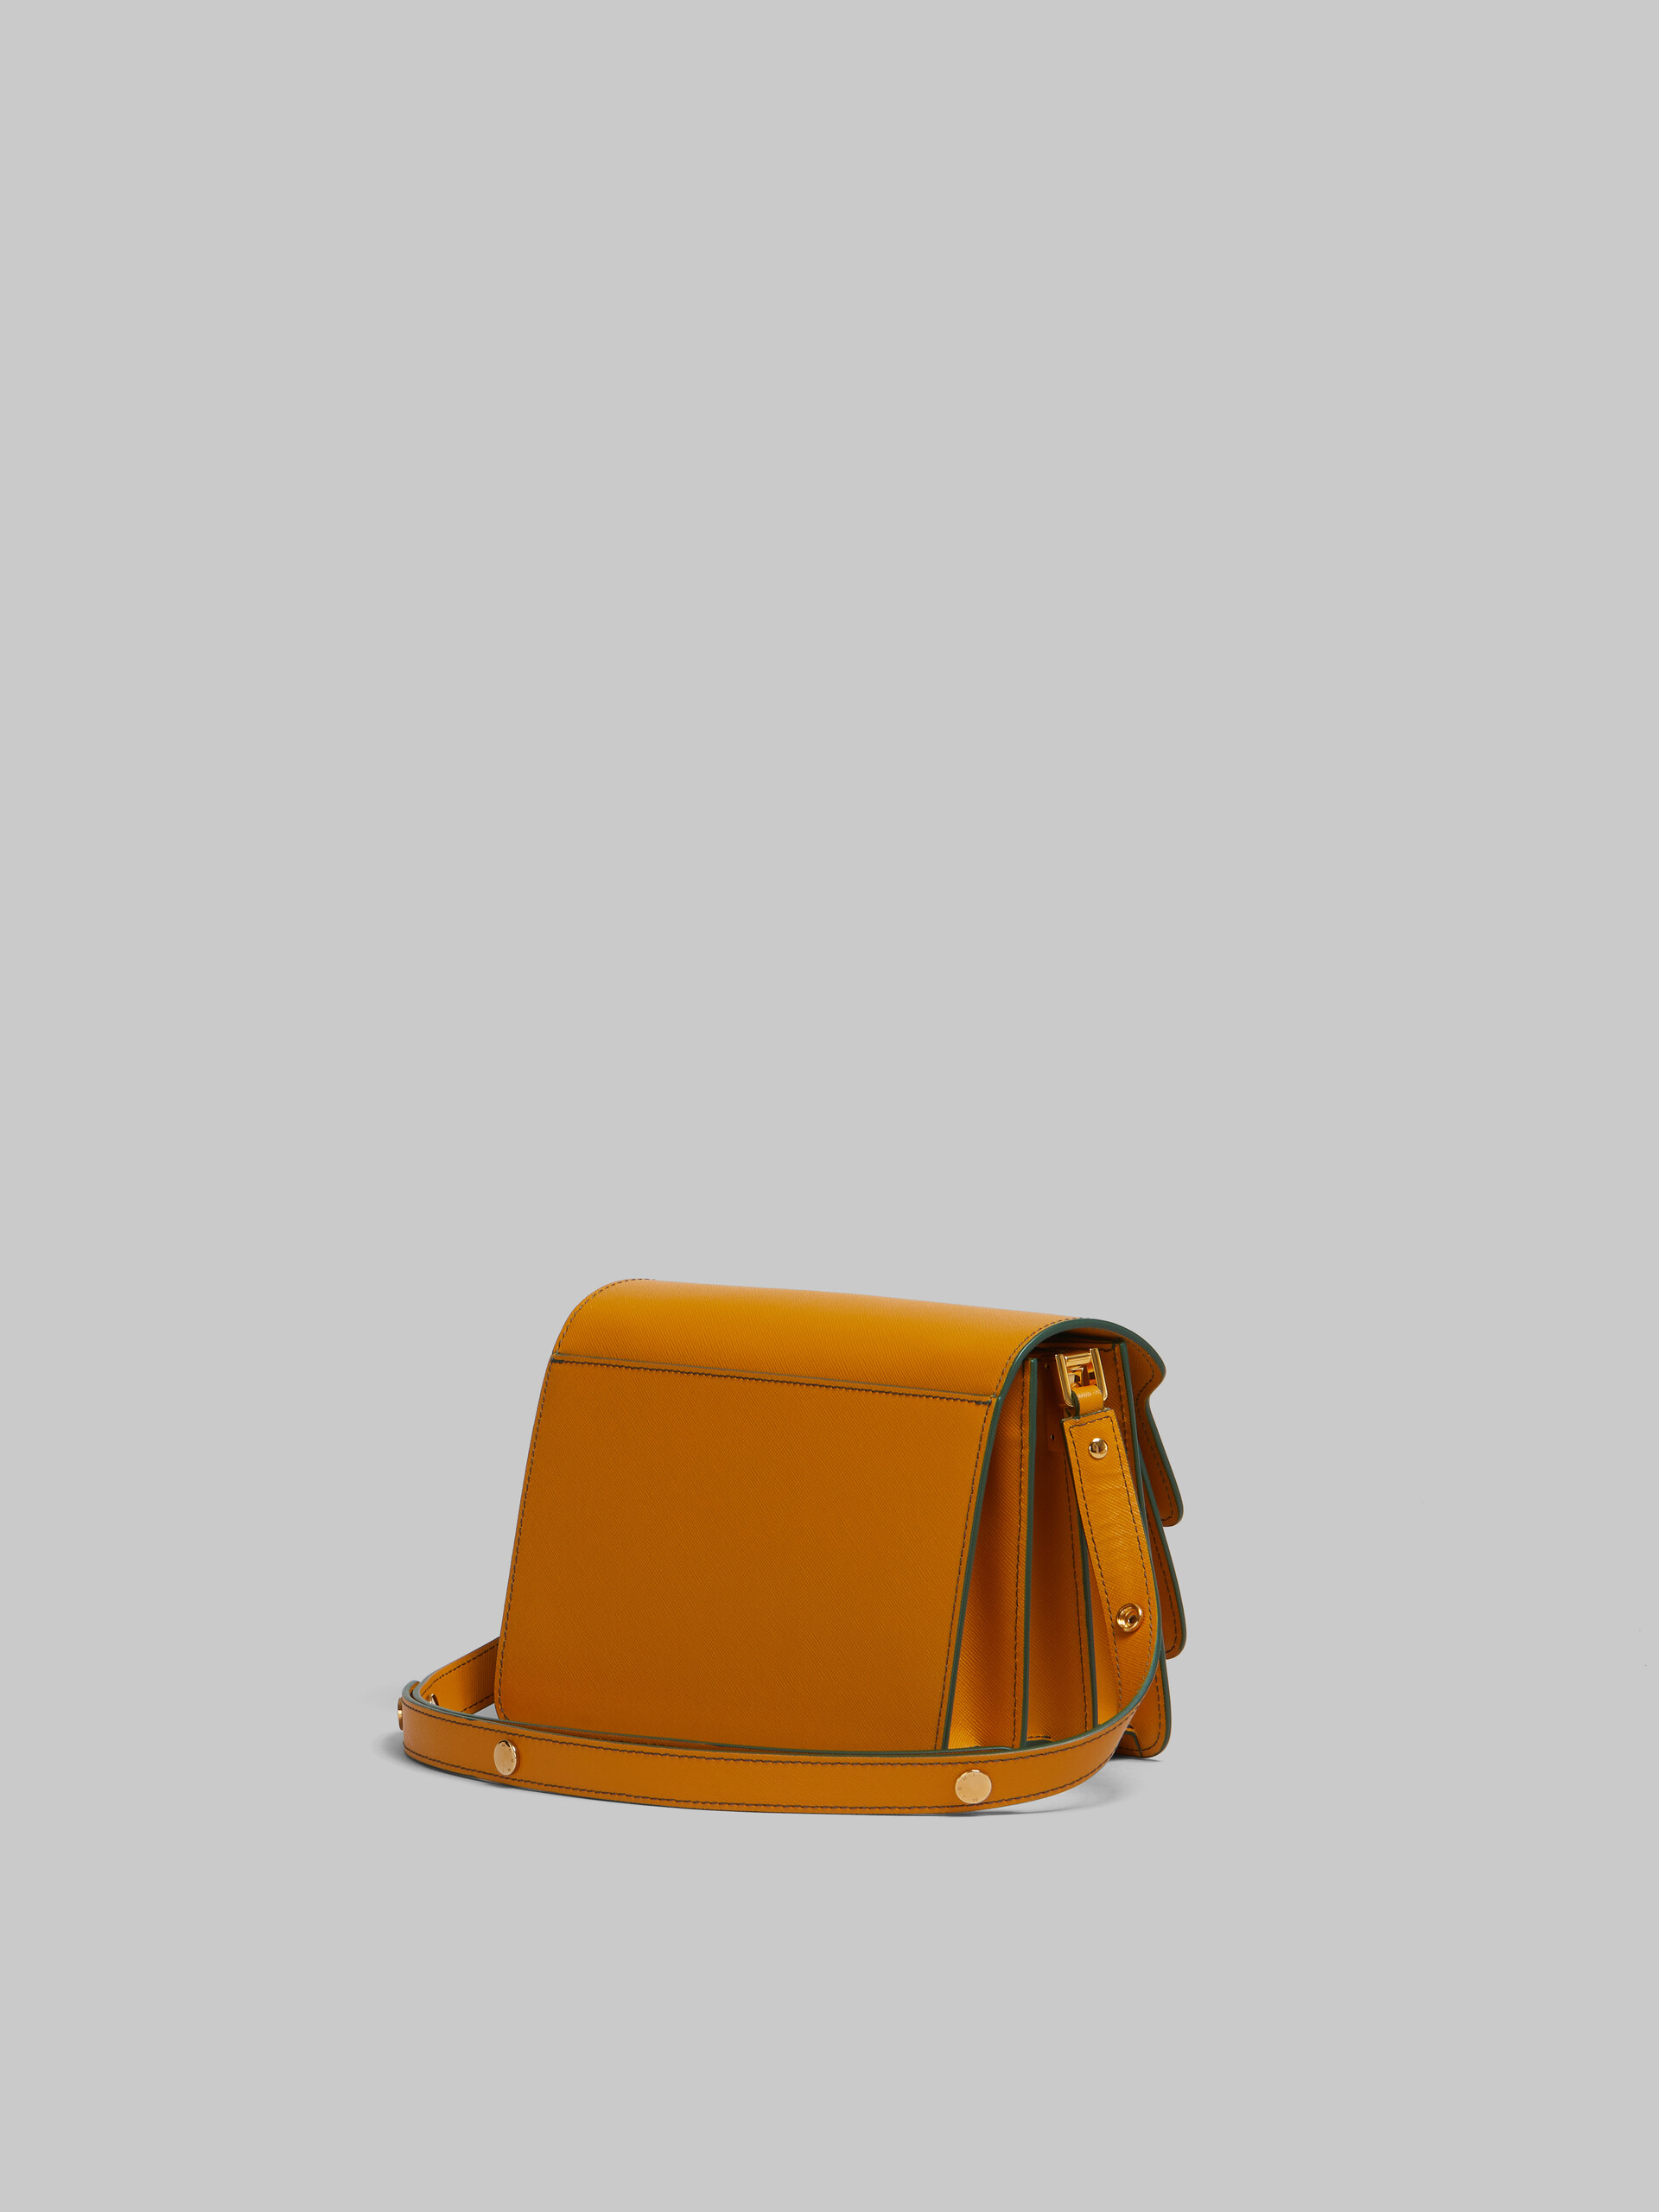 Beige saffiano leather medium Trunk bag - Shoulder Bag - Image 3